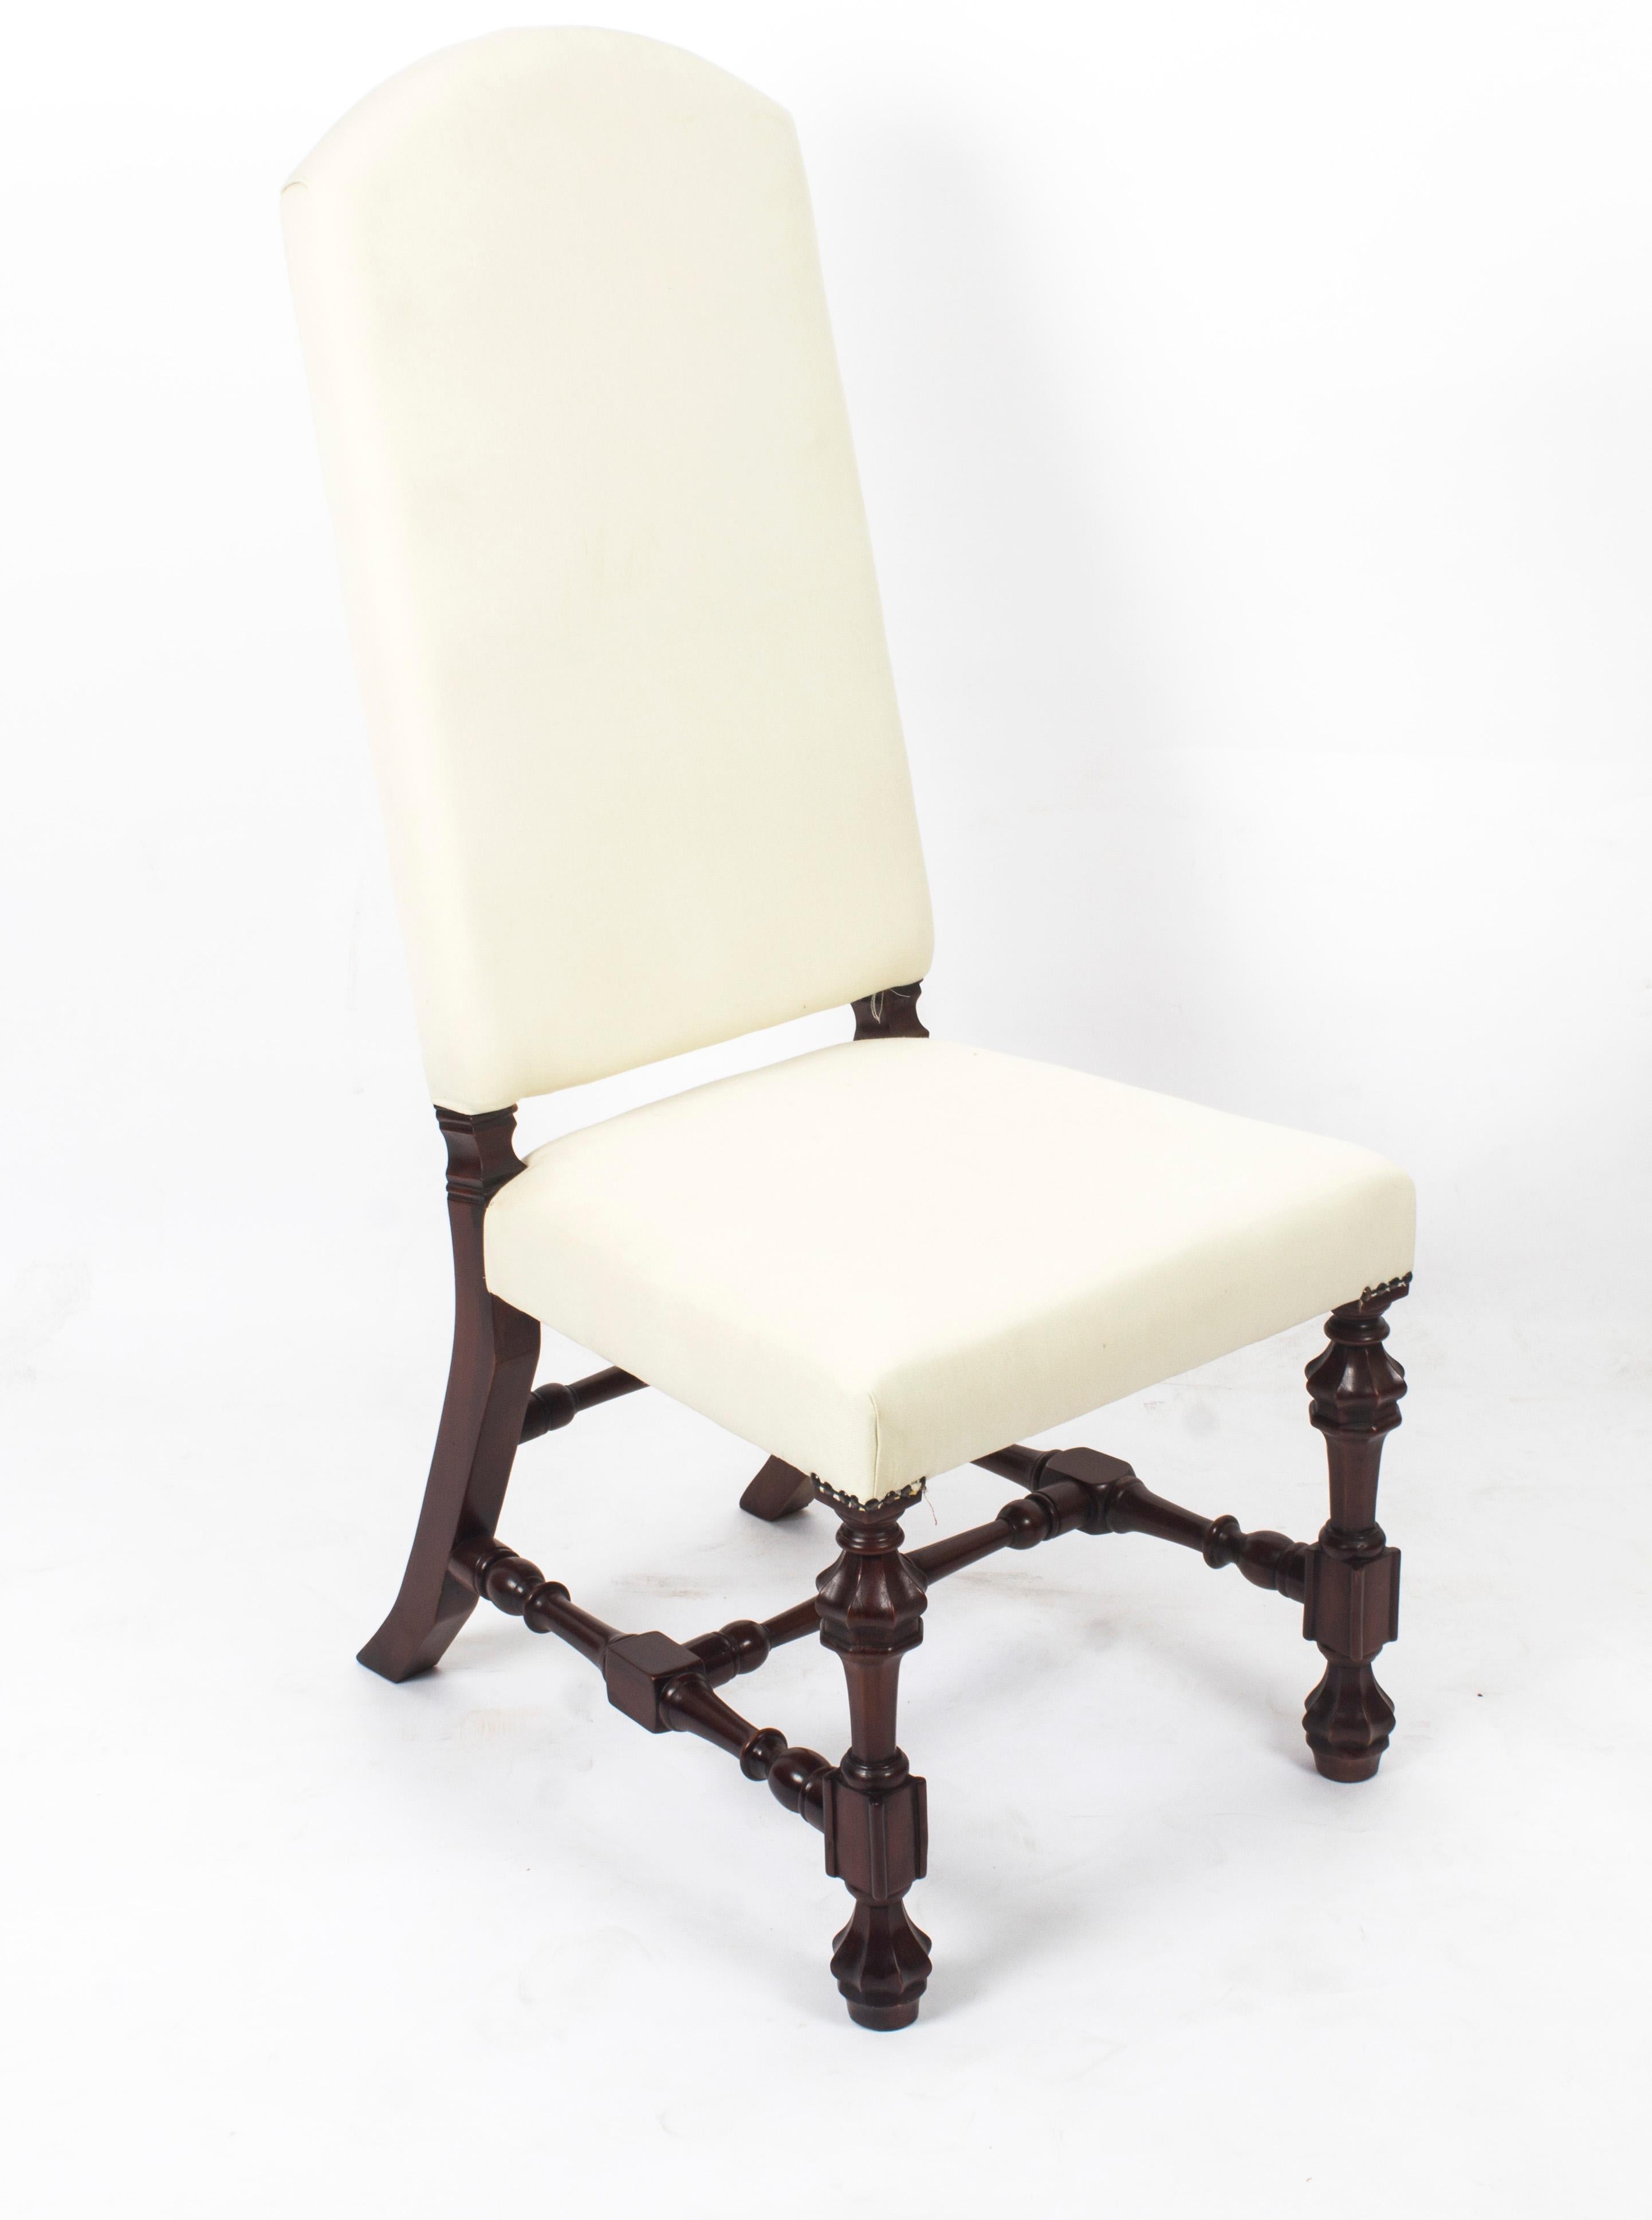 Une paire de chaises à dossier haut rembourrées de fabrication anglaise absolument fantastique, datant de la fin du 20e siècle.

Ces chaises ont été fabriquées à la main en acajou massif et l'ensemble comprend douze chaises d'appoint, toutes dotées